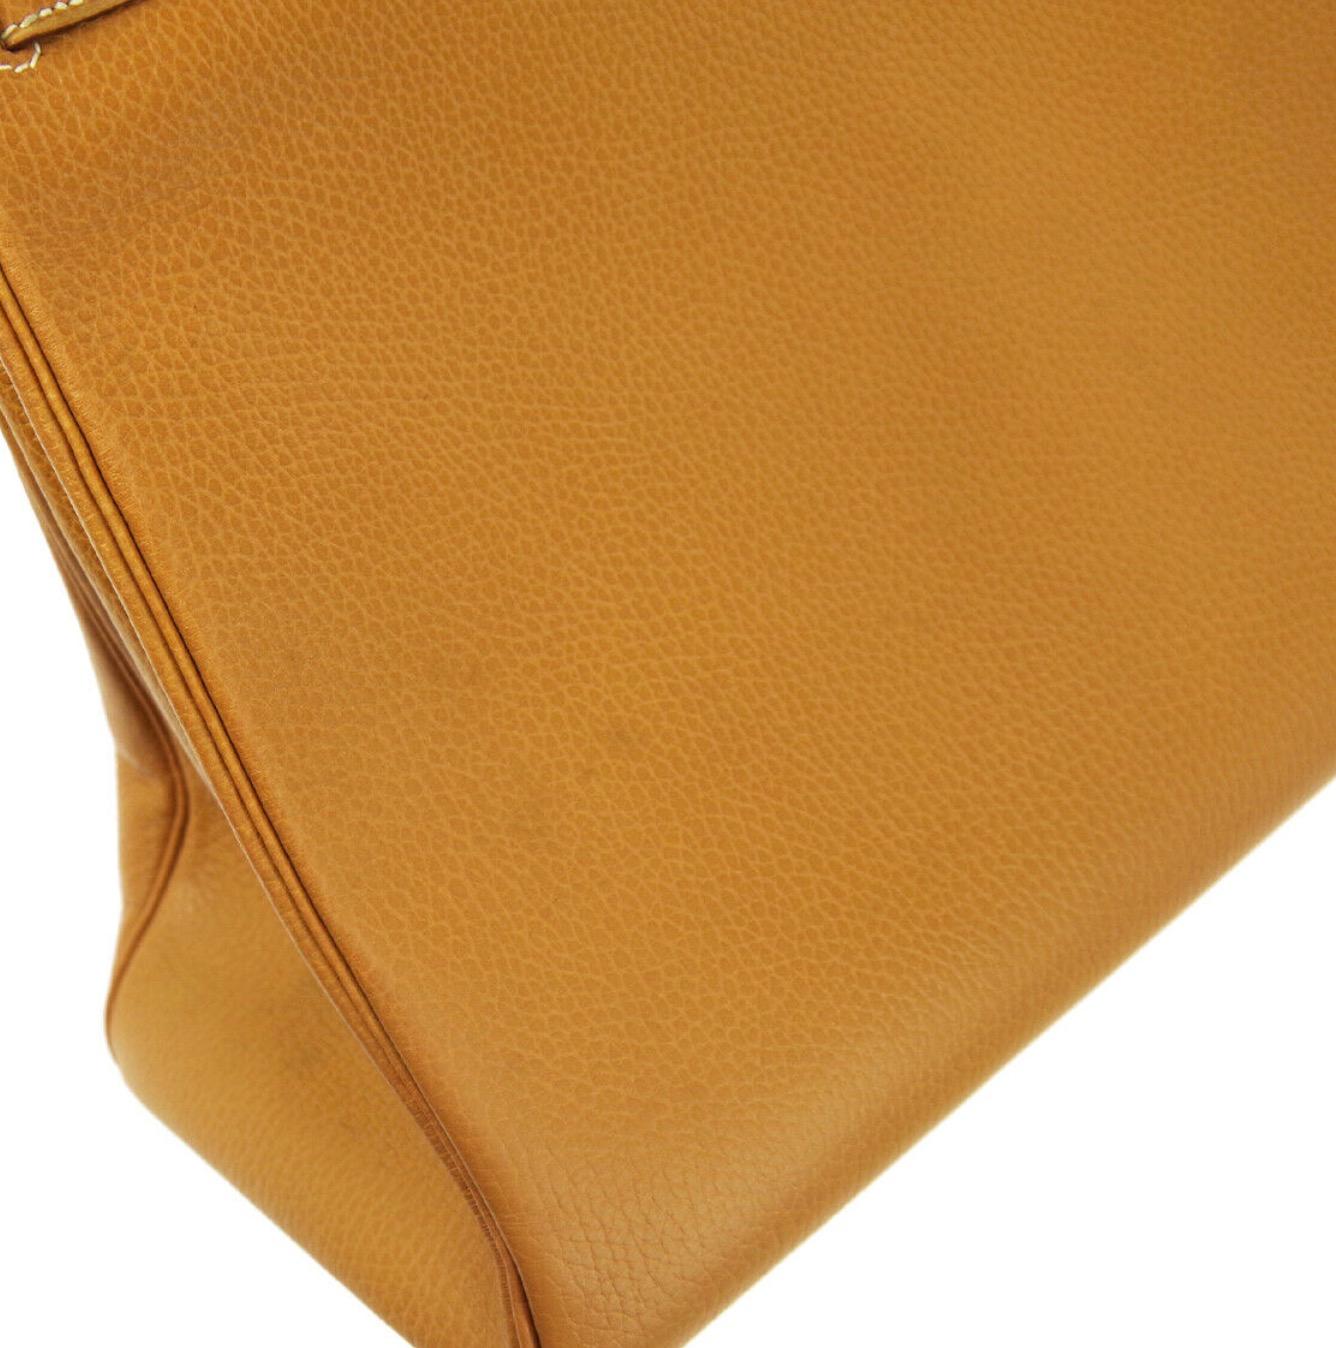 Brown Hermes Kelly 40 Mustard Leather Top Handle Satchel Carryall Tote Flap Bag